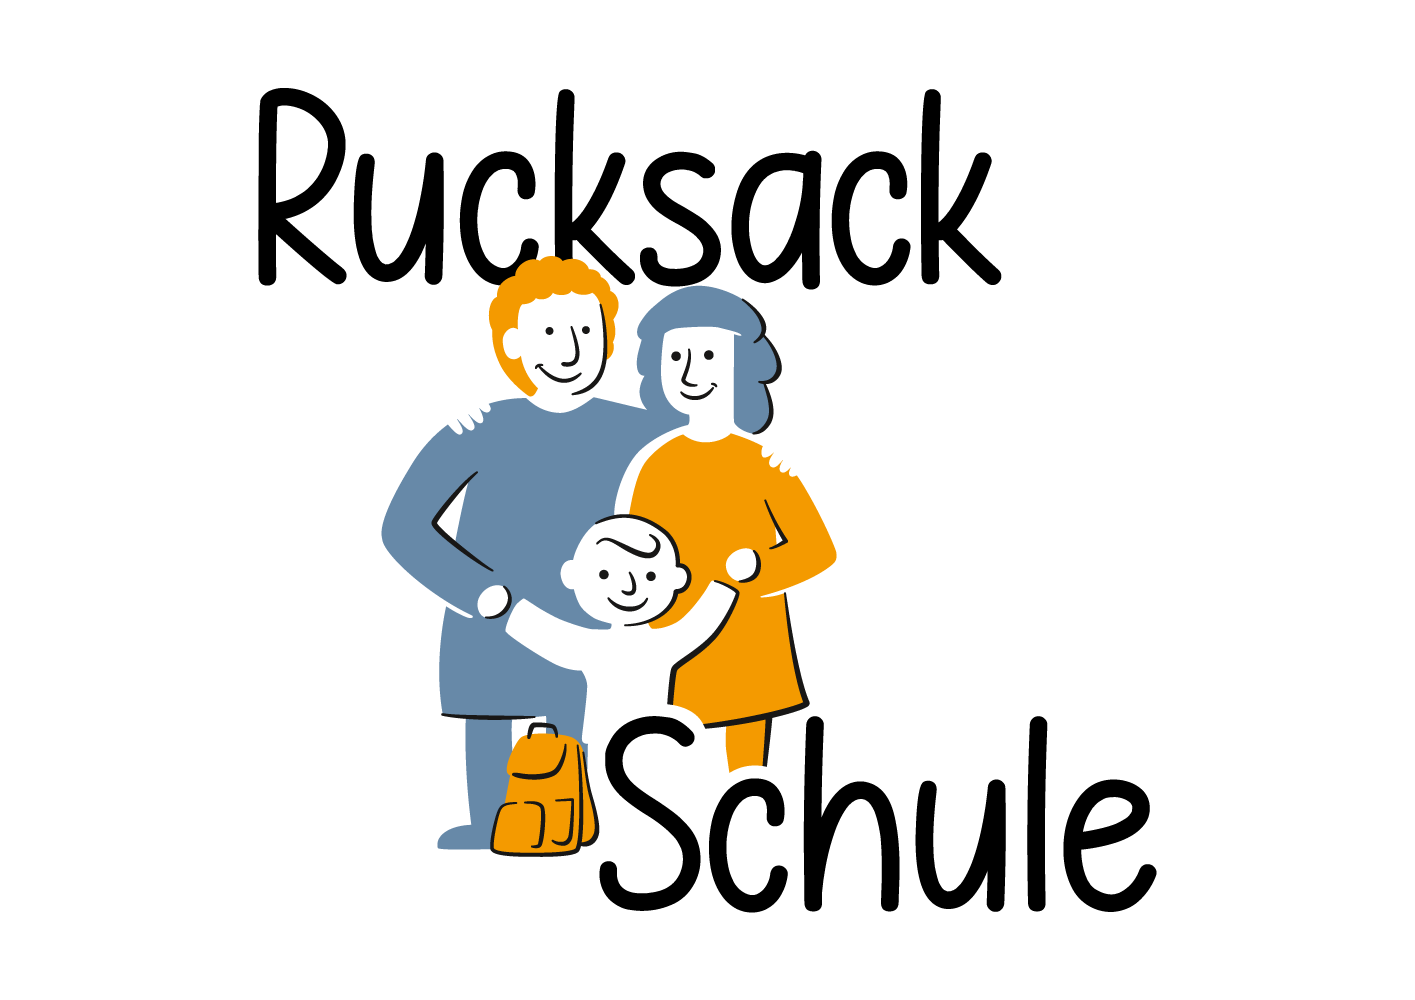 Das Bild zeigt das Logo des Programms "Rucksack Schule". Als Zeichnung zeigt das Bild einen Jungen mit Rucksack, der "Rucksack" an die Tafel schreibt. Dabei lächelt er.